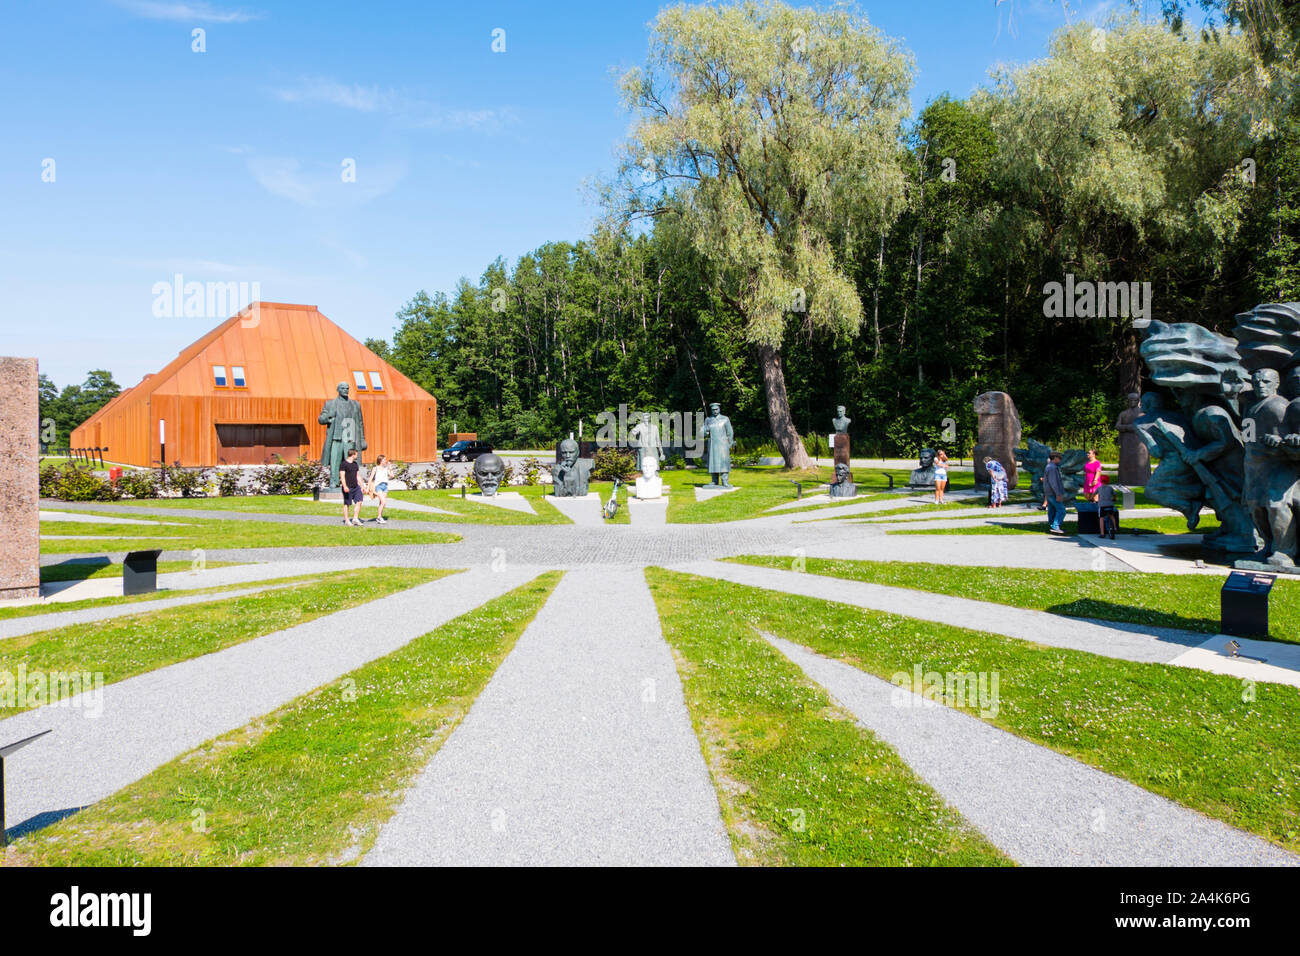 Parc monument soviétique, Maajamäe, Tallinn, Estonie Banque D'Images